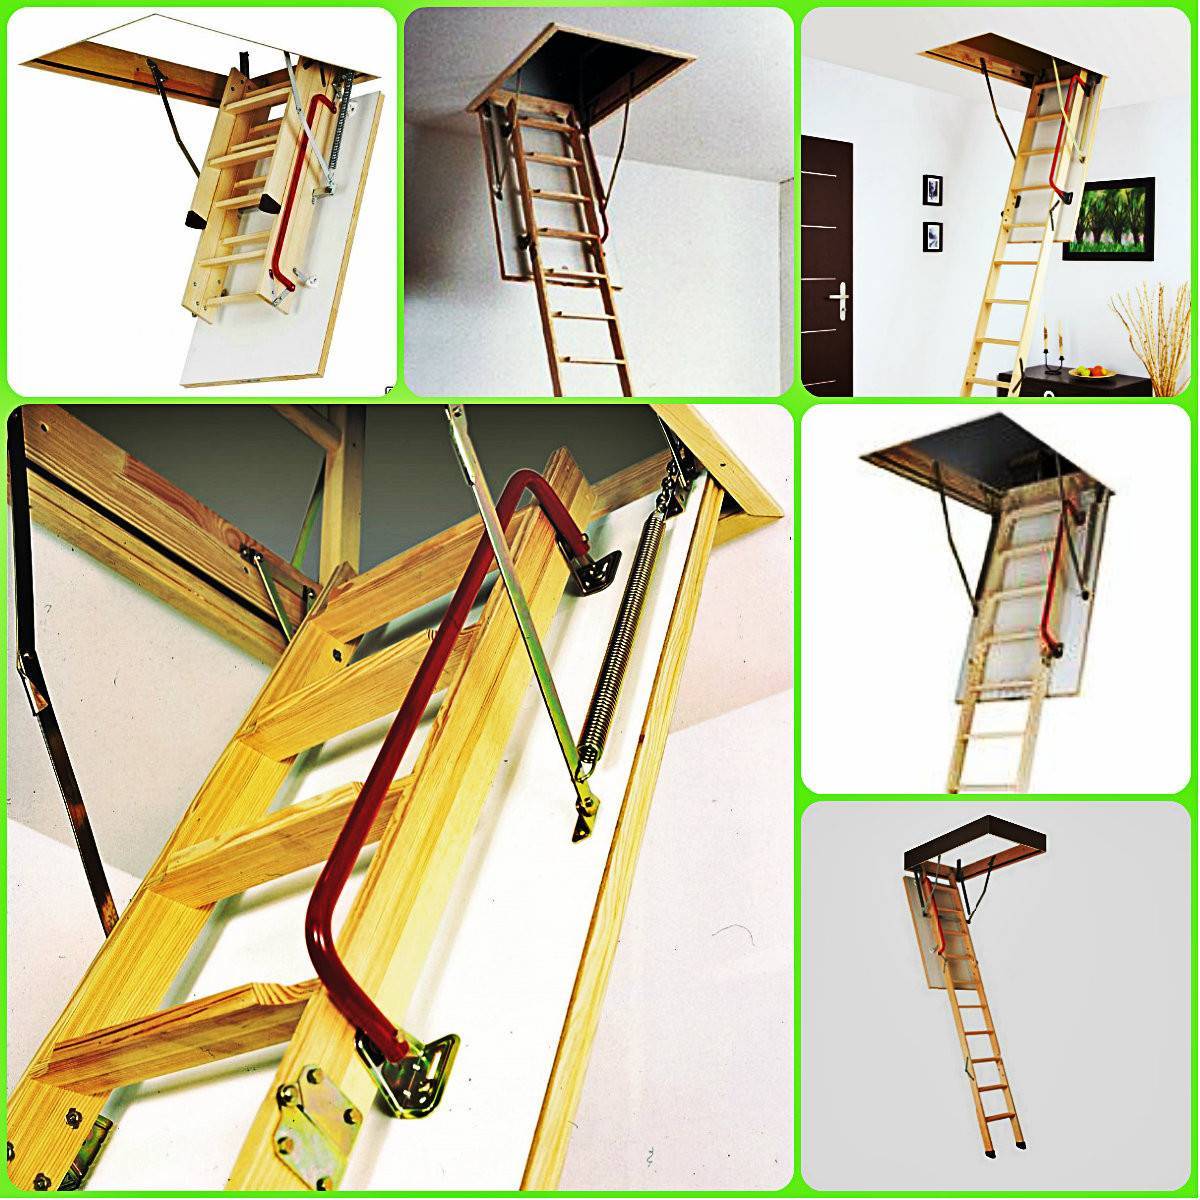 Складная лестница на чердак: виды конструкций, изготовление своими руками